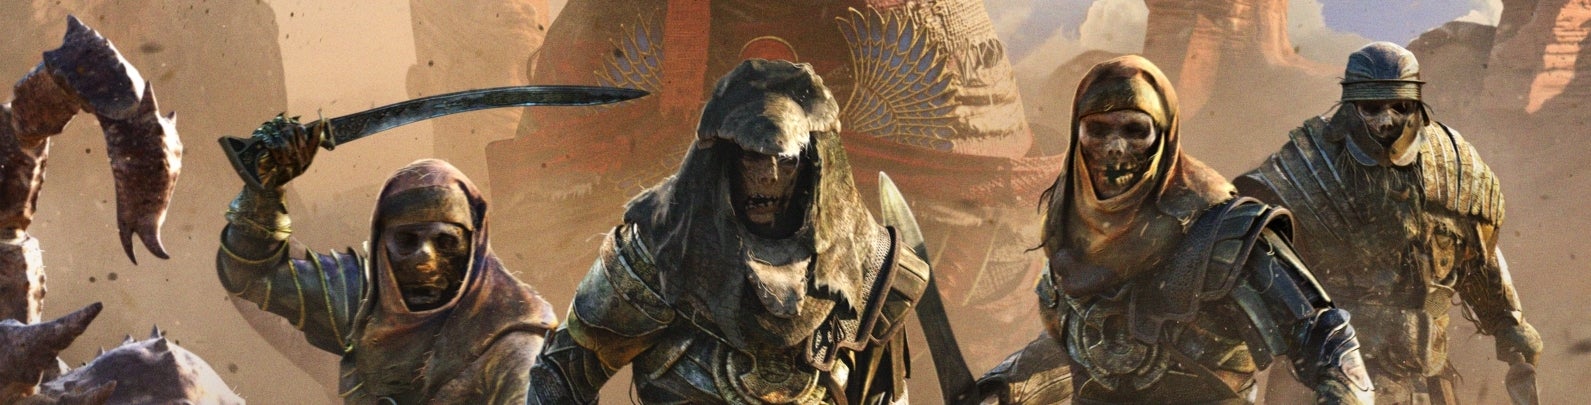 Imagen para Análisis de Assassin's Creed Origins: La Maldición de los Faraones